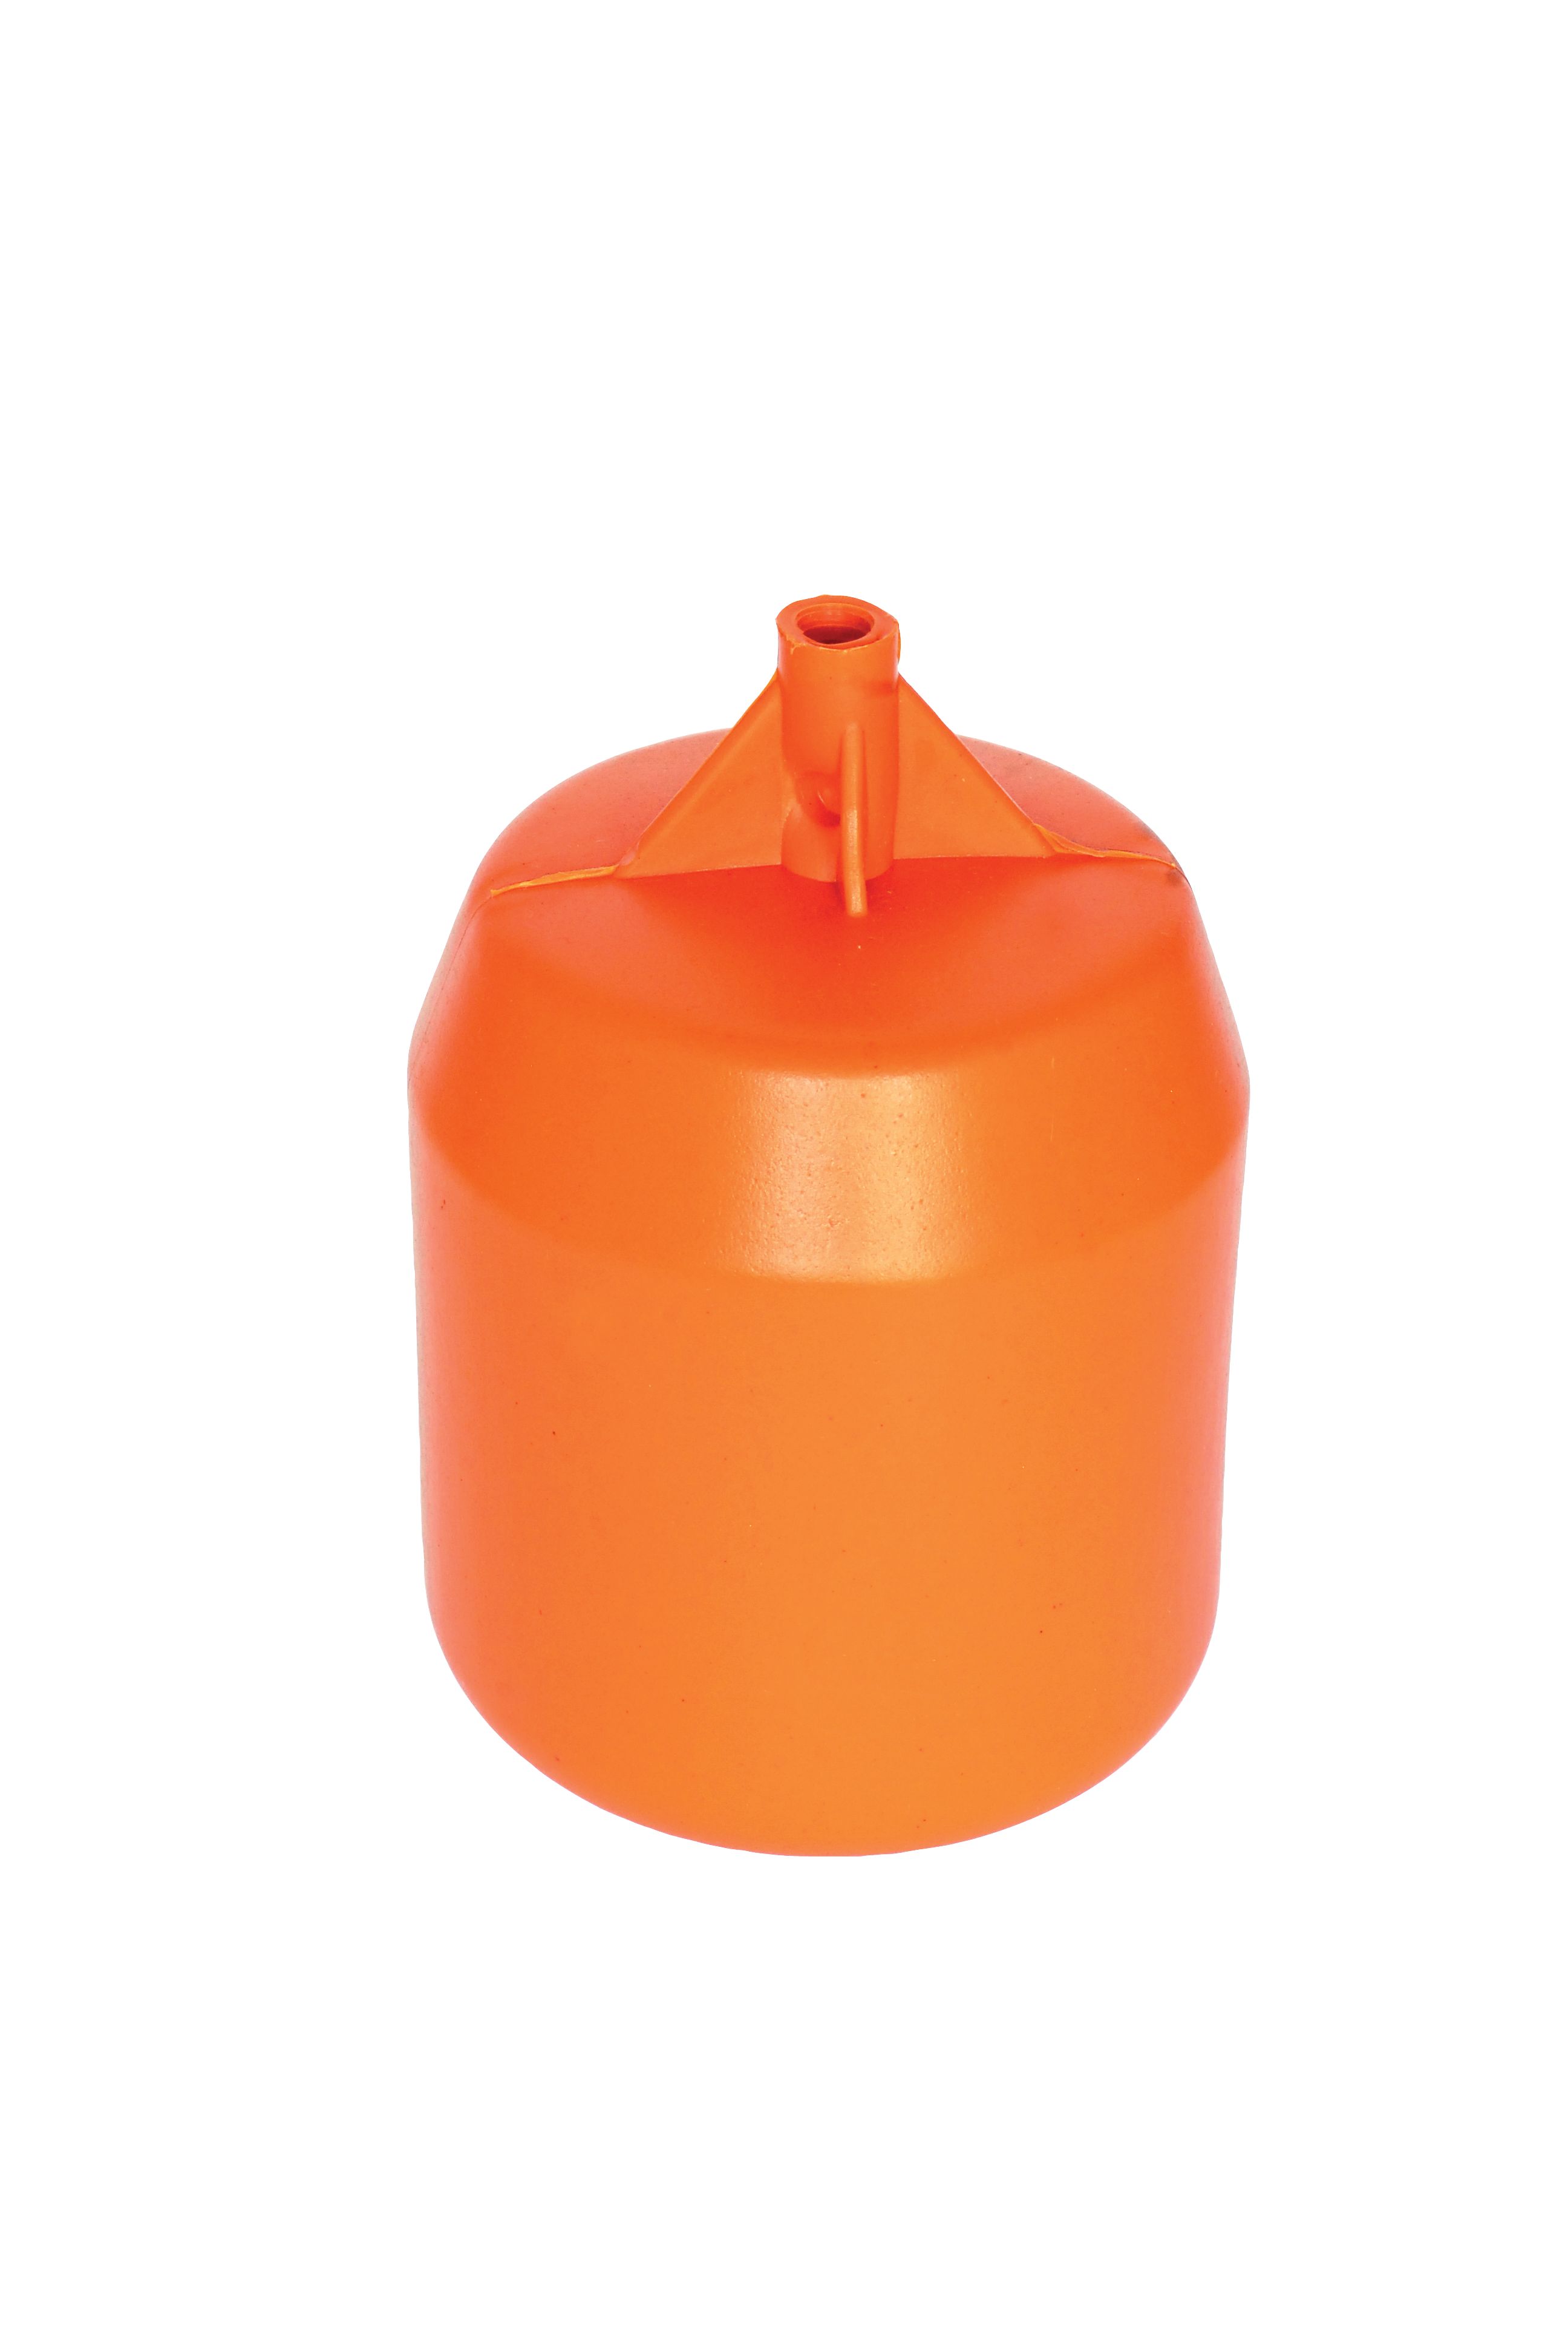 Image of Euroflo By Fluidmaster Cylindrical Orange Ball Float